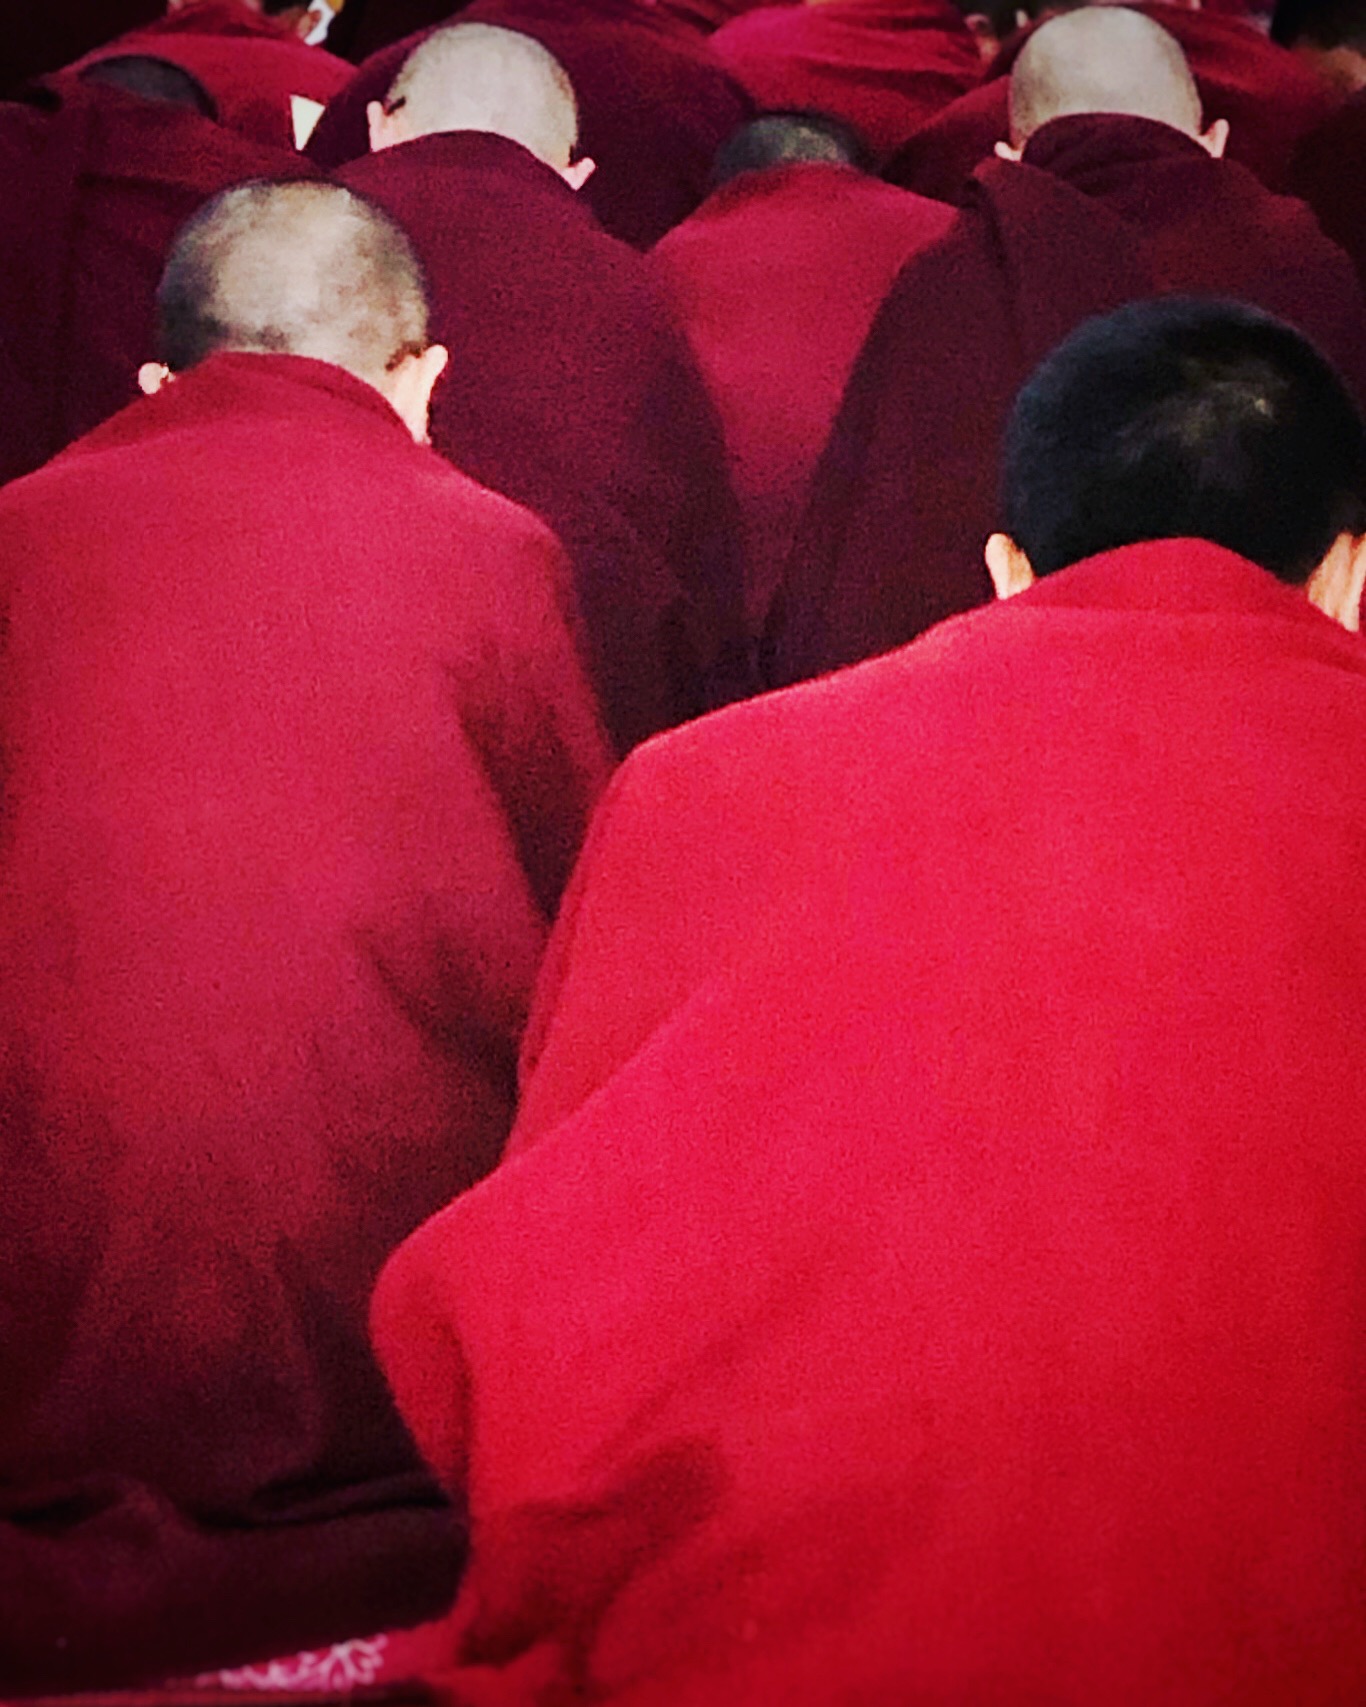 Tibetan Monks in Dalai Lama Monastry